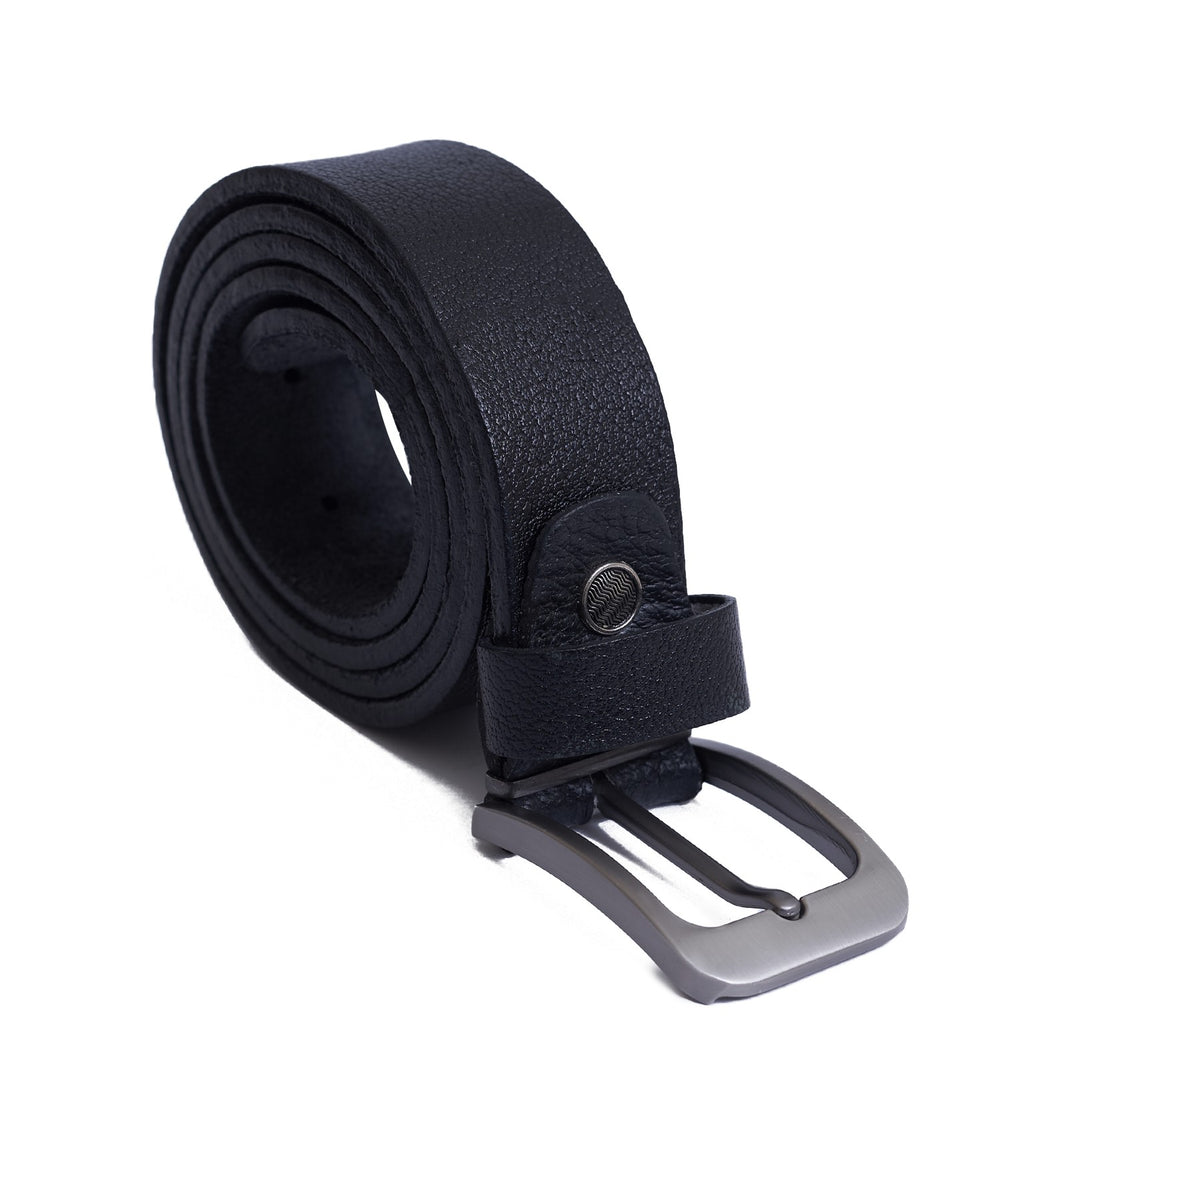 3.5 CM Crushed genuine leather Belt - Super Lux  - Black Color Model B7202